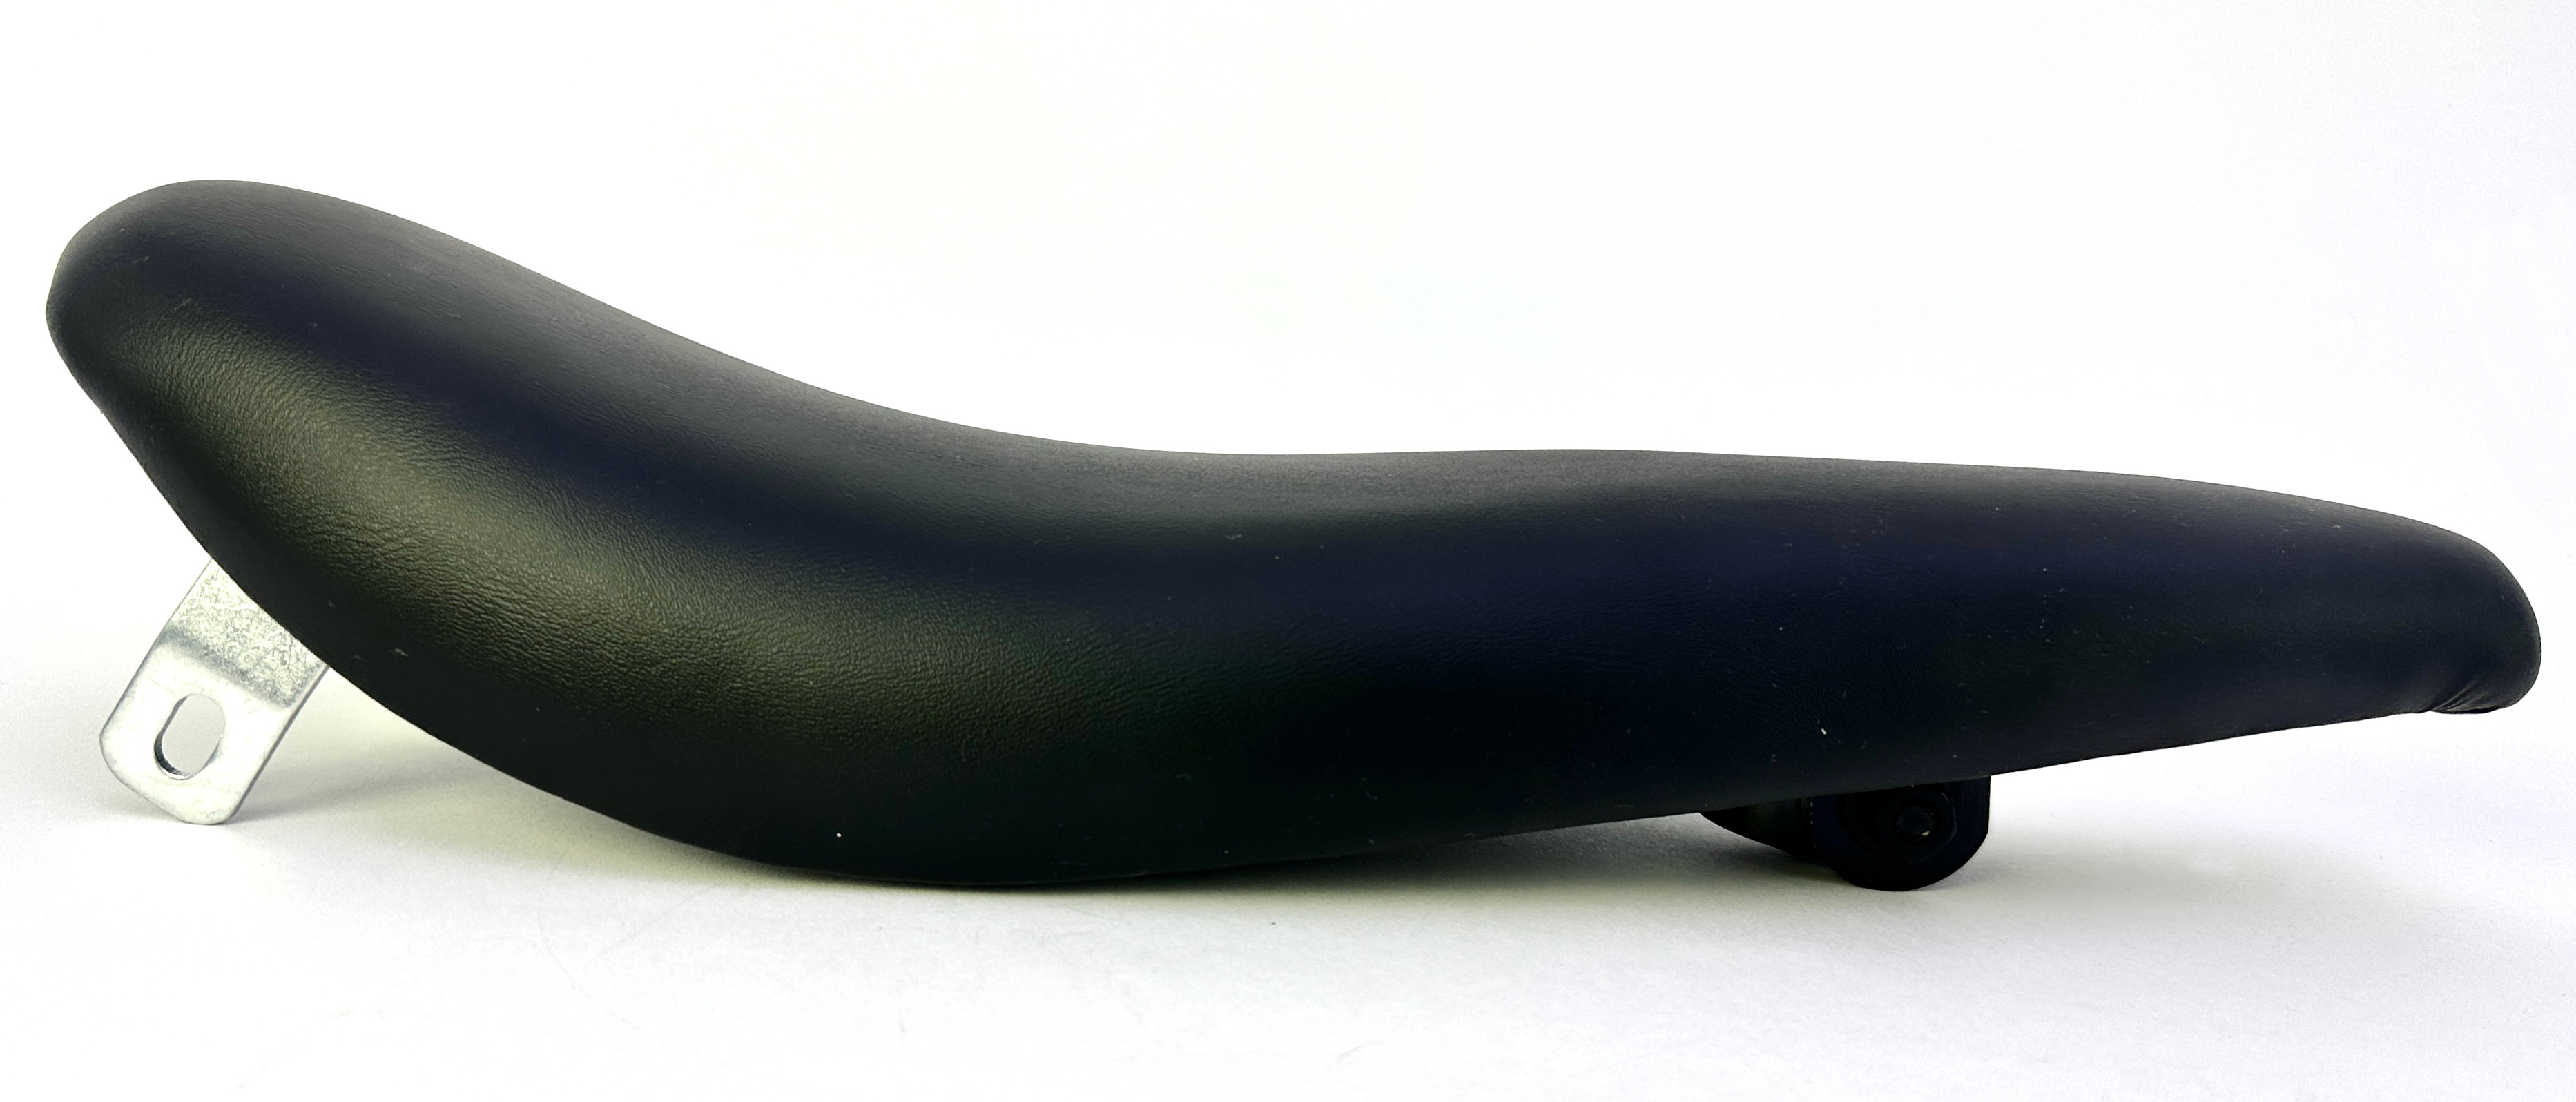 Bananensattel Kunstleder mit Montagebügel für die Sissybar schwarz